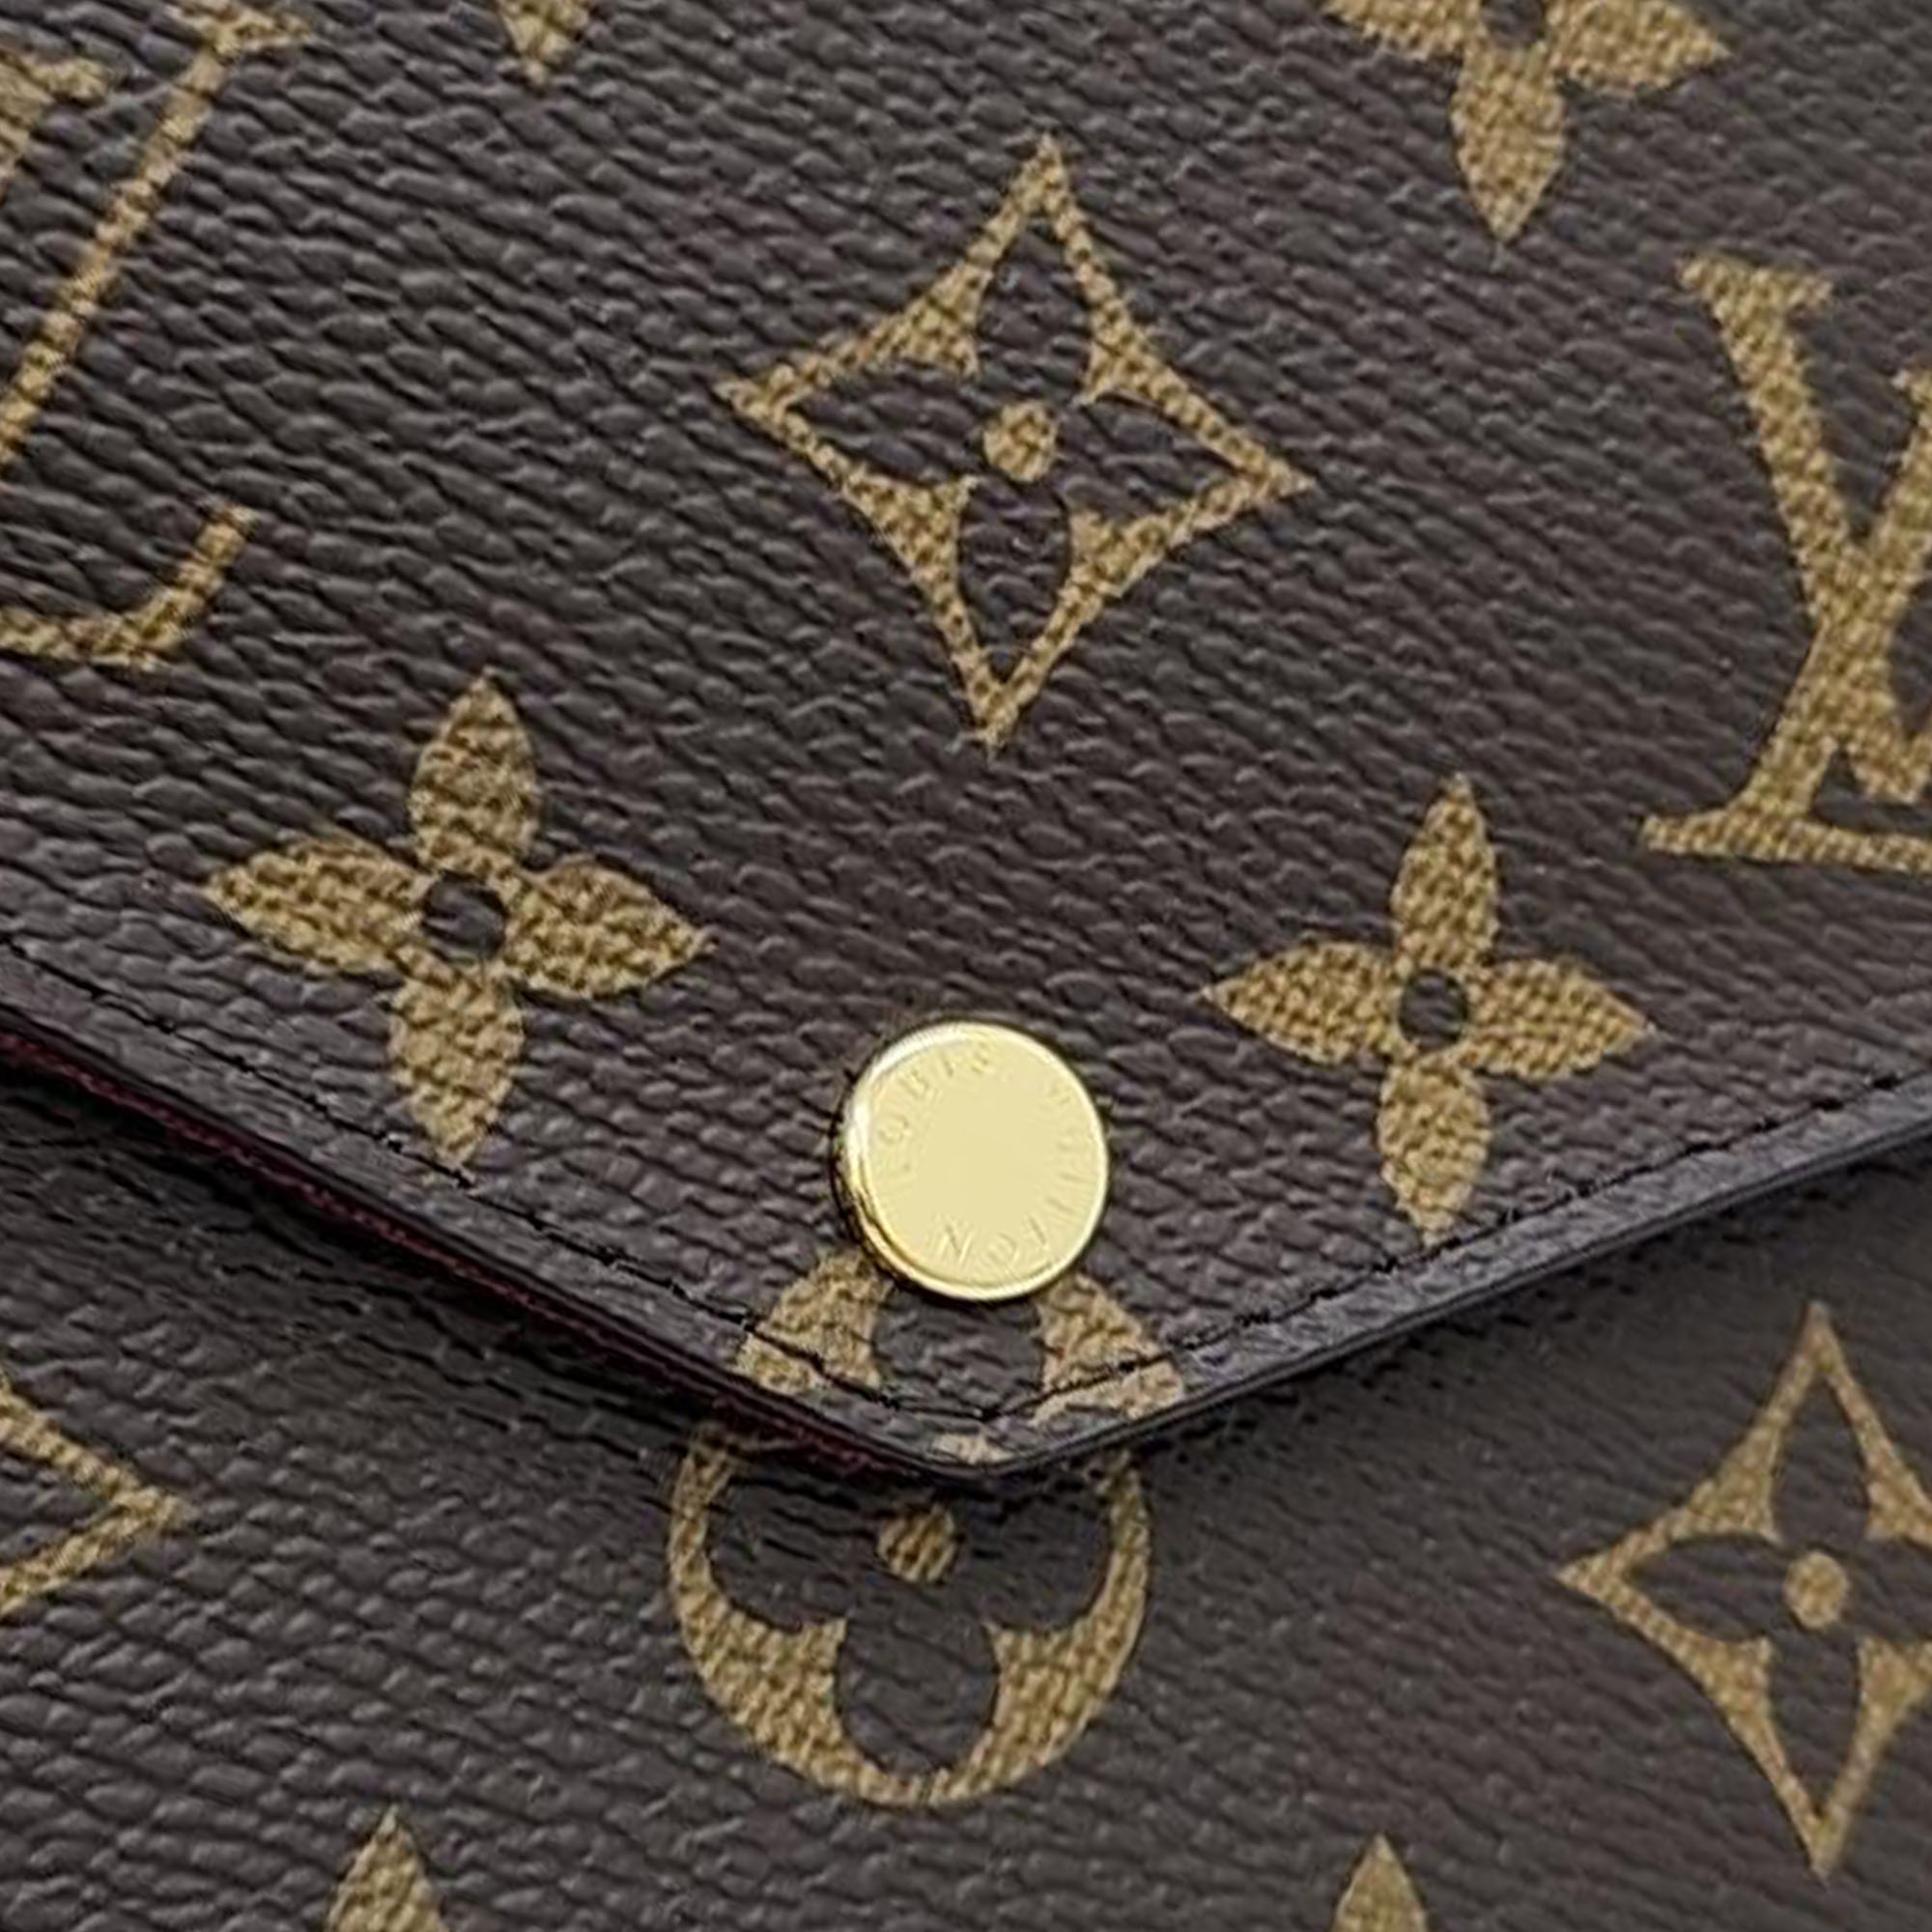 Louis Vuitton Monogram Pochette Felicie M61276 Bag